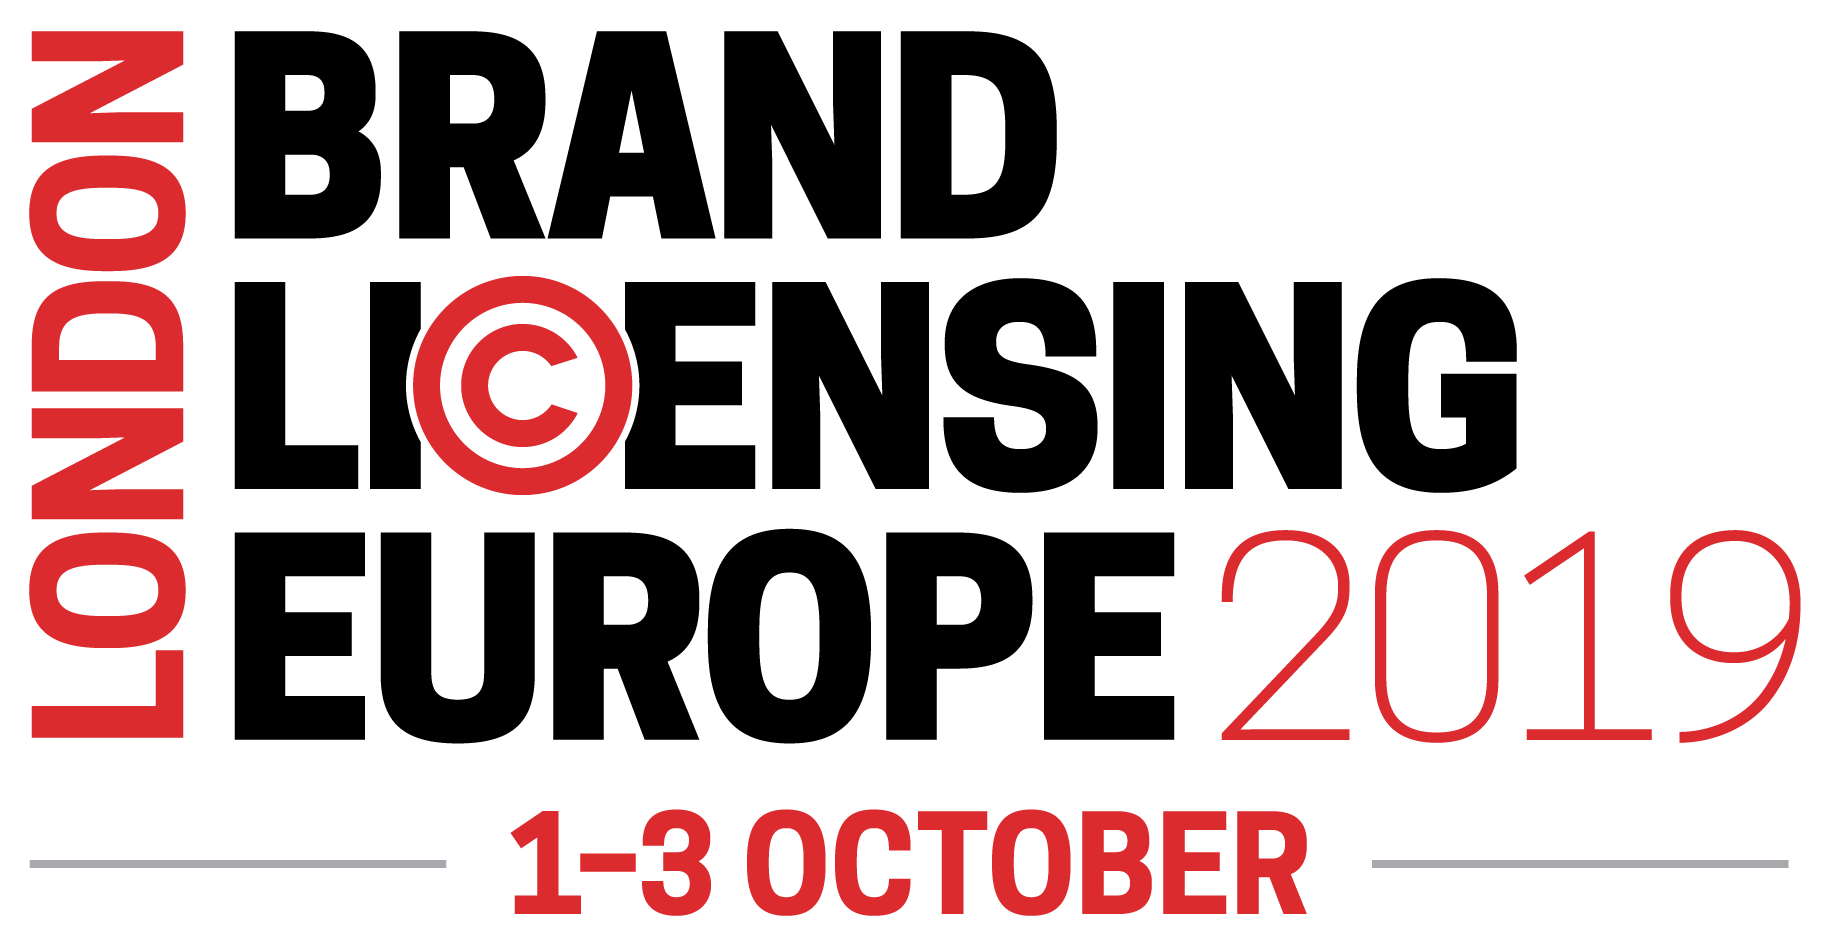 European Clothing Logo - Brand Licensing Europe |